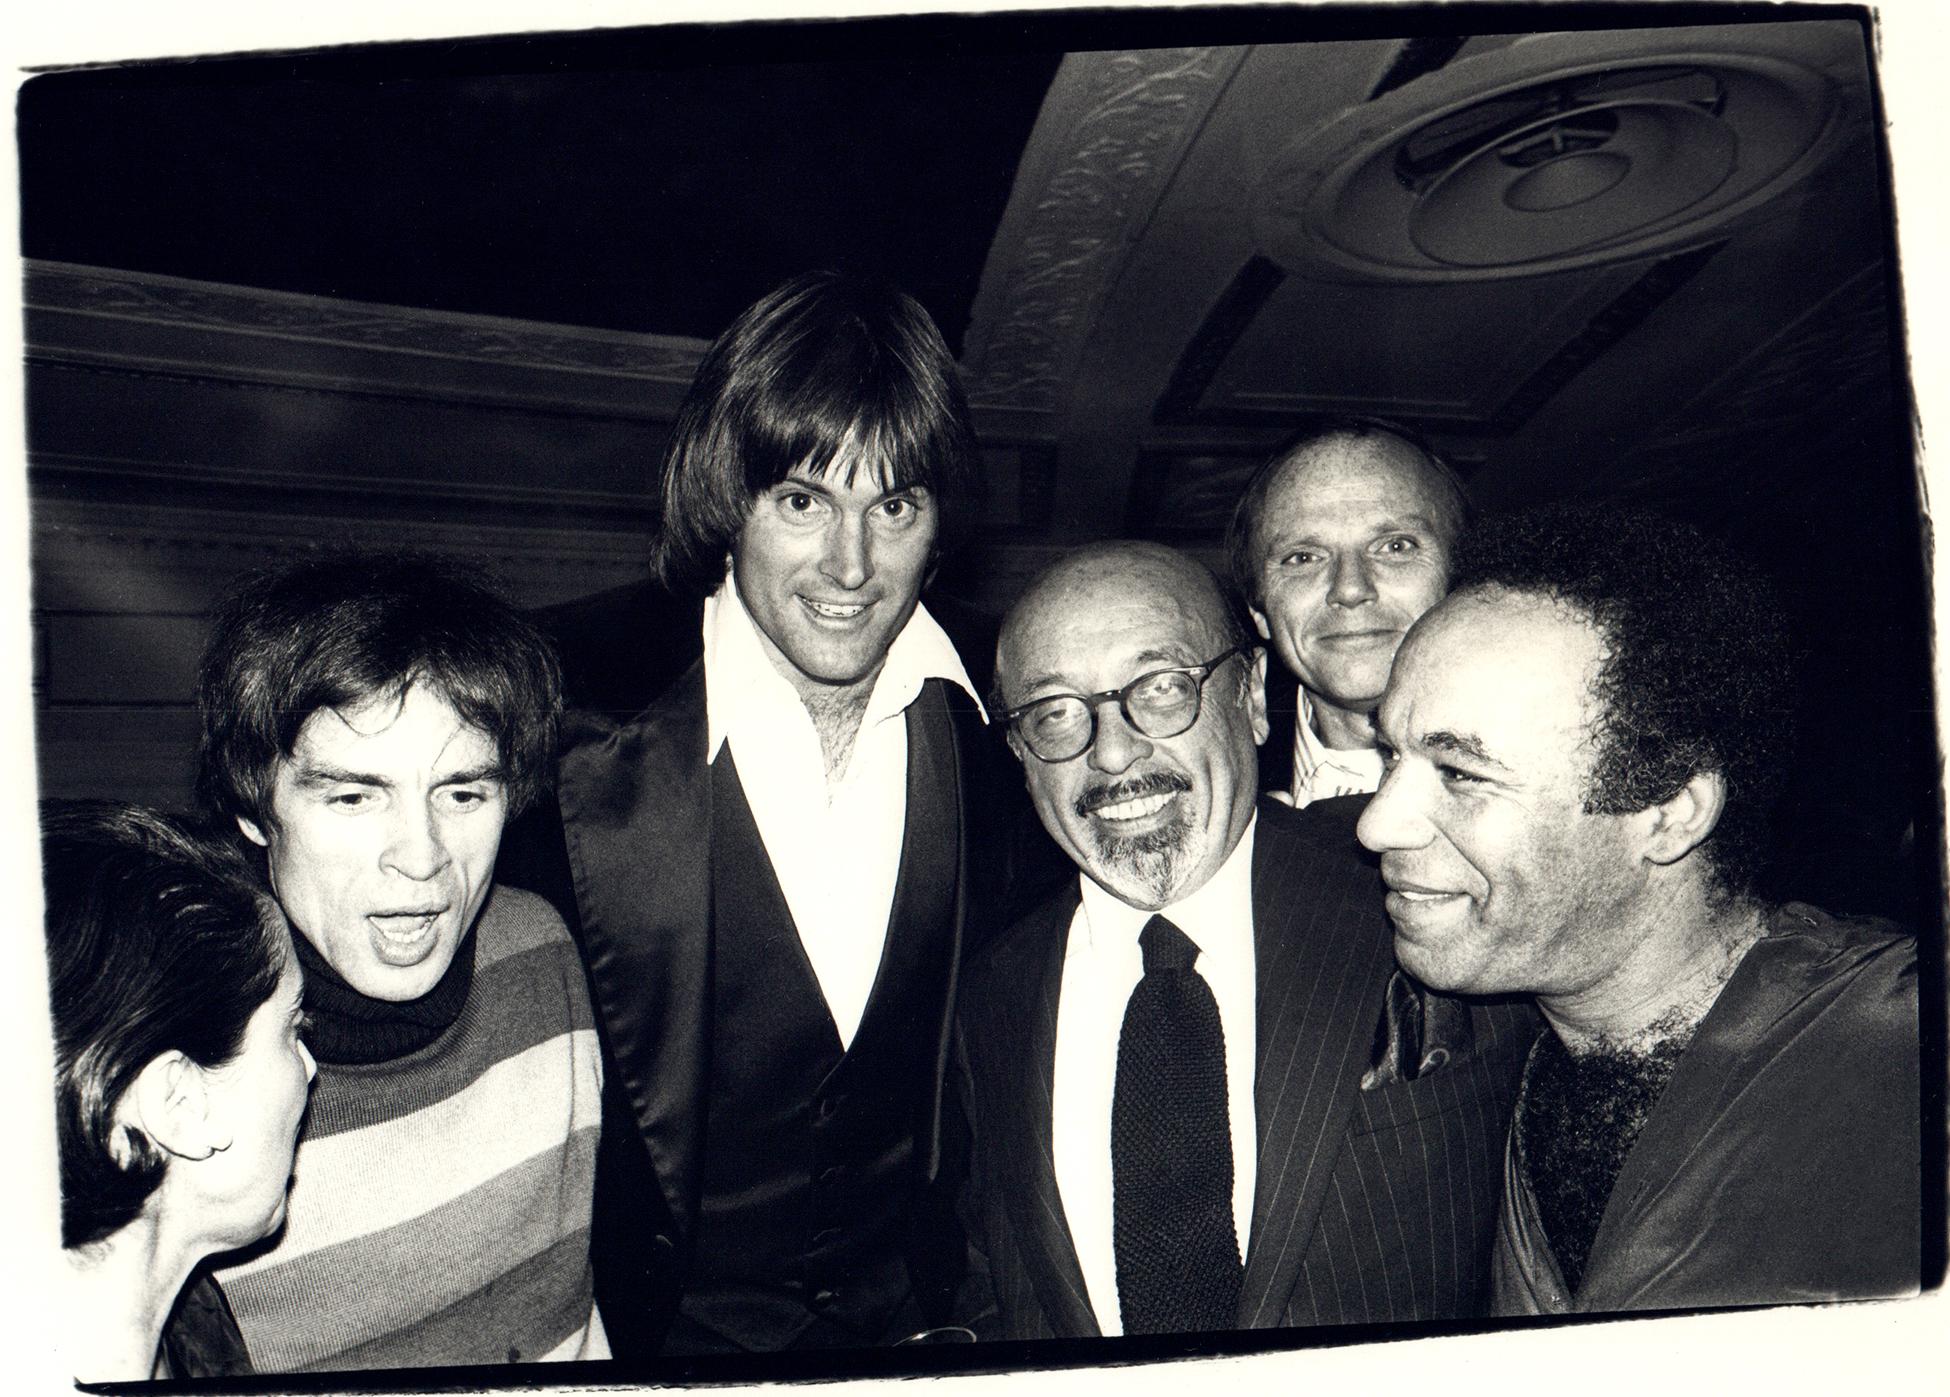 Rudolf Nureyev, Bruce Jenner, and Ahmet Ertegun